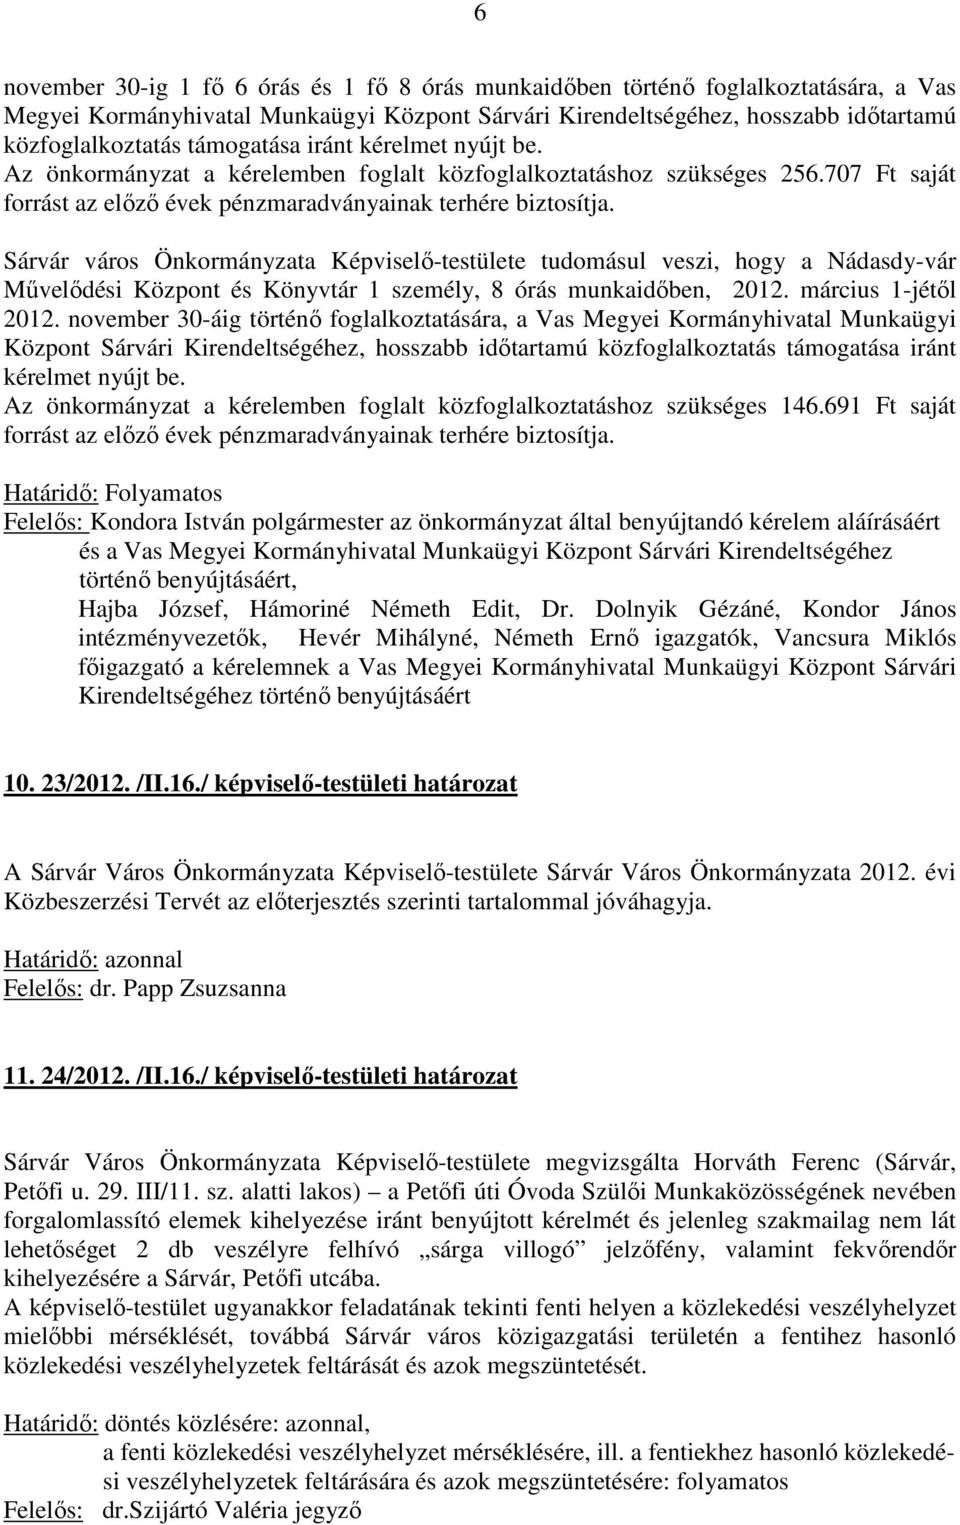 707 Ft saját Sárvár város Önkormányzata Képviselő-testülete tudomásul veszi, hogy a Nádasdy-vár Művelődési Központ és Könyvtár 1 személy, 8 órás munkaidőben, 2012. március 1-jétől 2012.